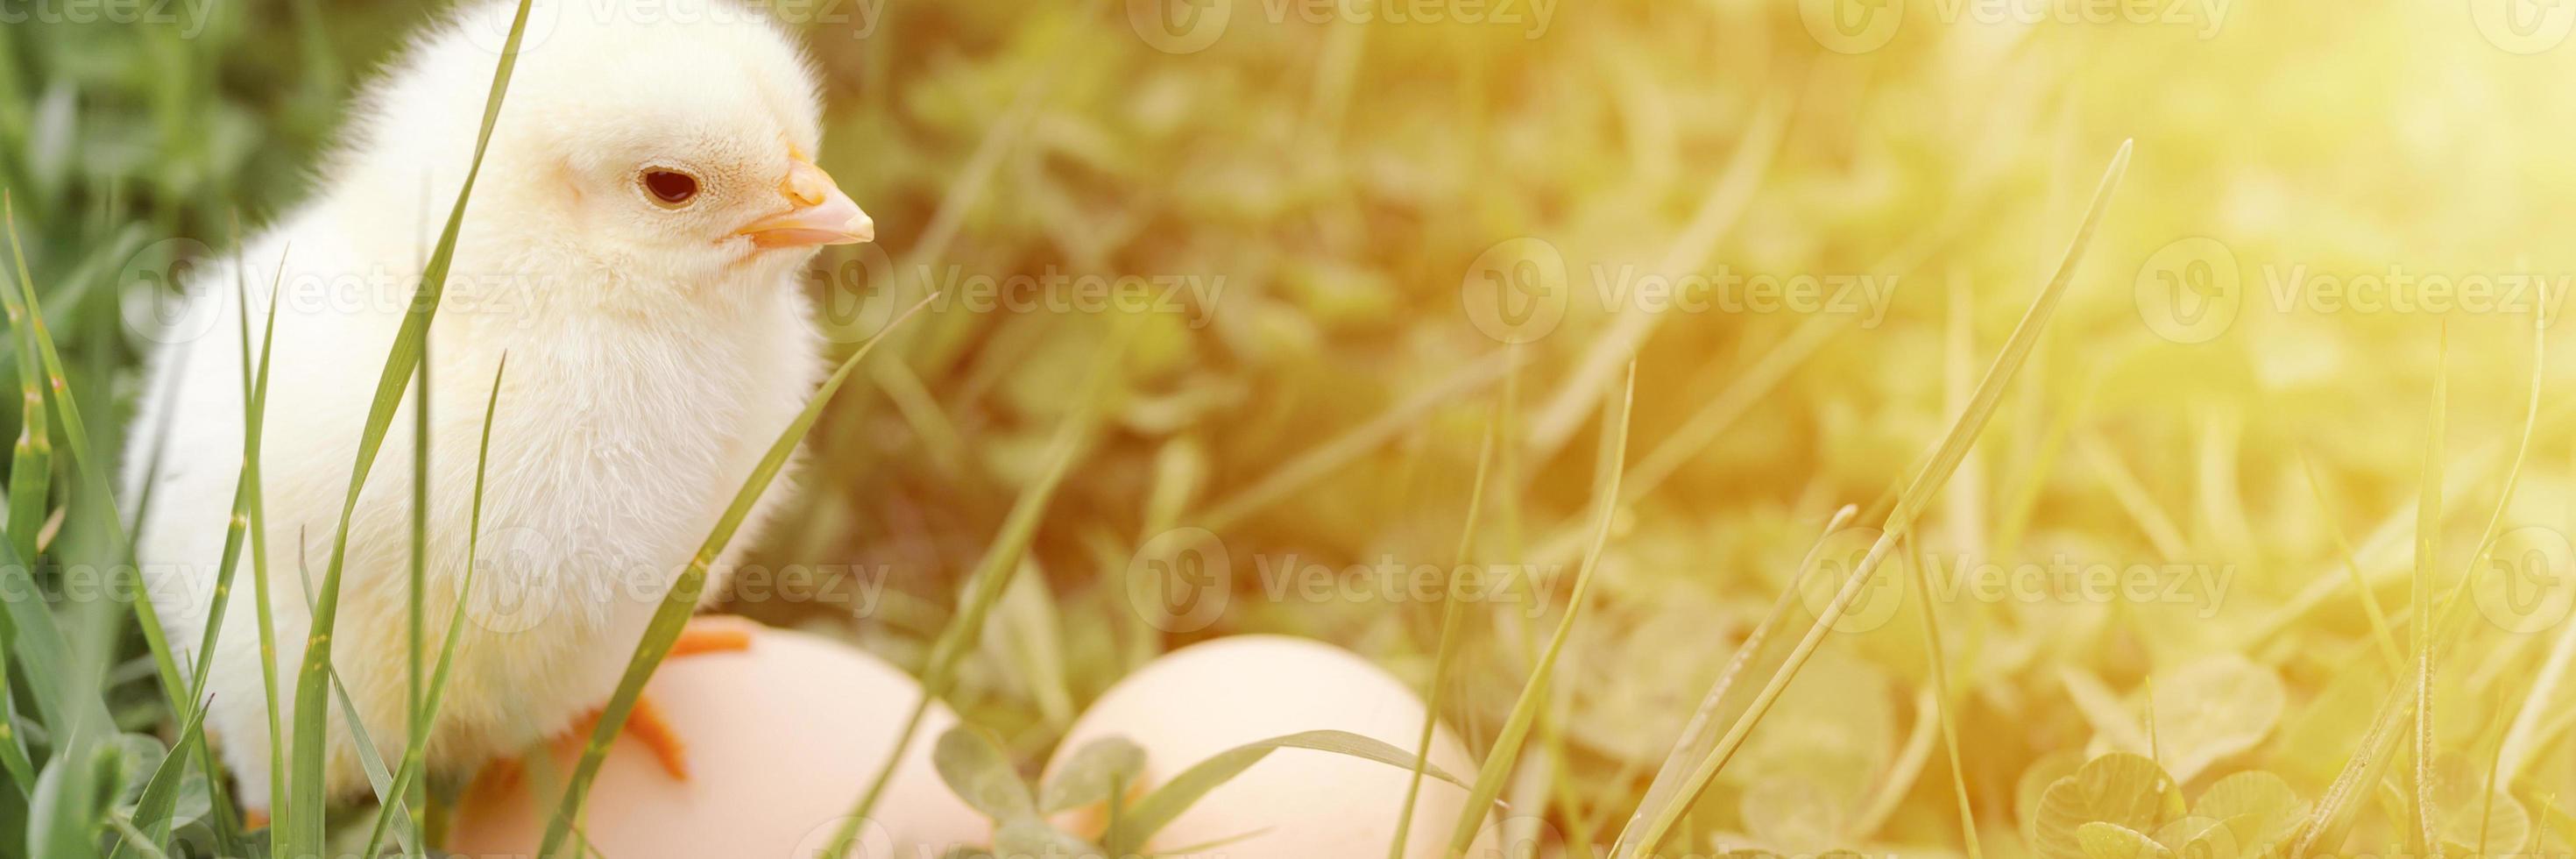 schattig klein klein pasgeboren geel babykuiken en drie eieren van de kippenboer in het groene gras foto